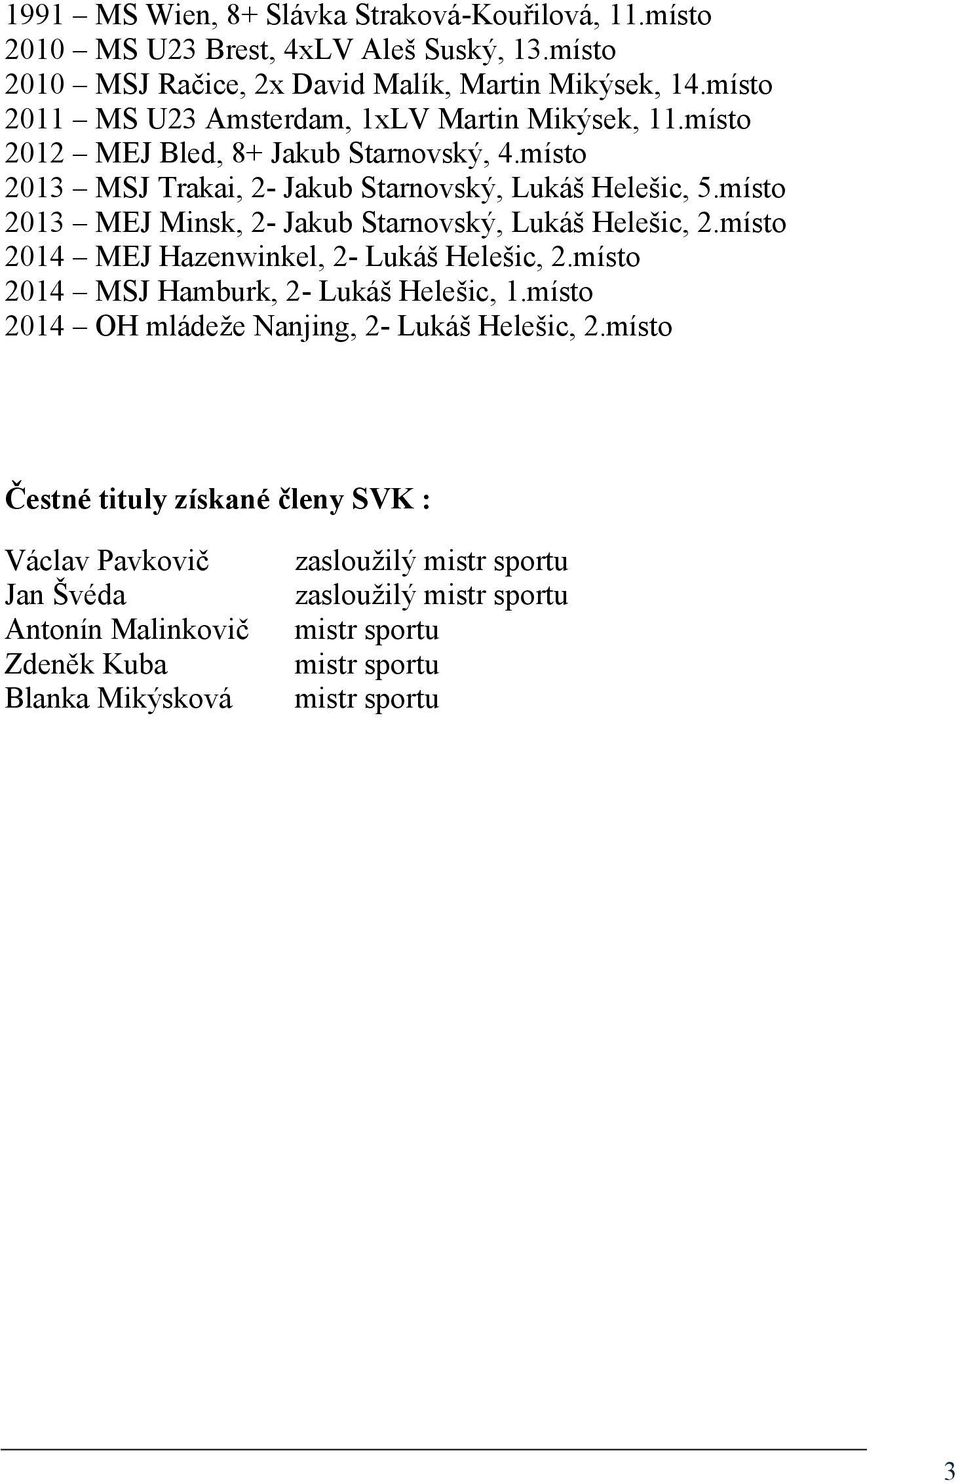 místo 2013 MEJ Minsk, 2- Jakub Starnovský, Lukáš Helešic, 2.místo 2014 MEJ Hazenwinkel, 2- Lukáš Helešic, 2.místo 2014 MSJ Hamburk, 2- Lukáš Helešic, 1.